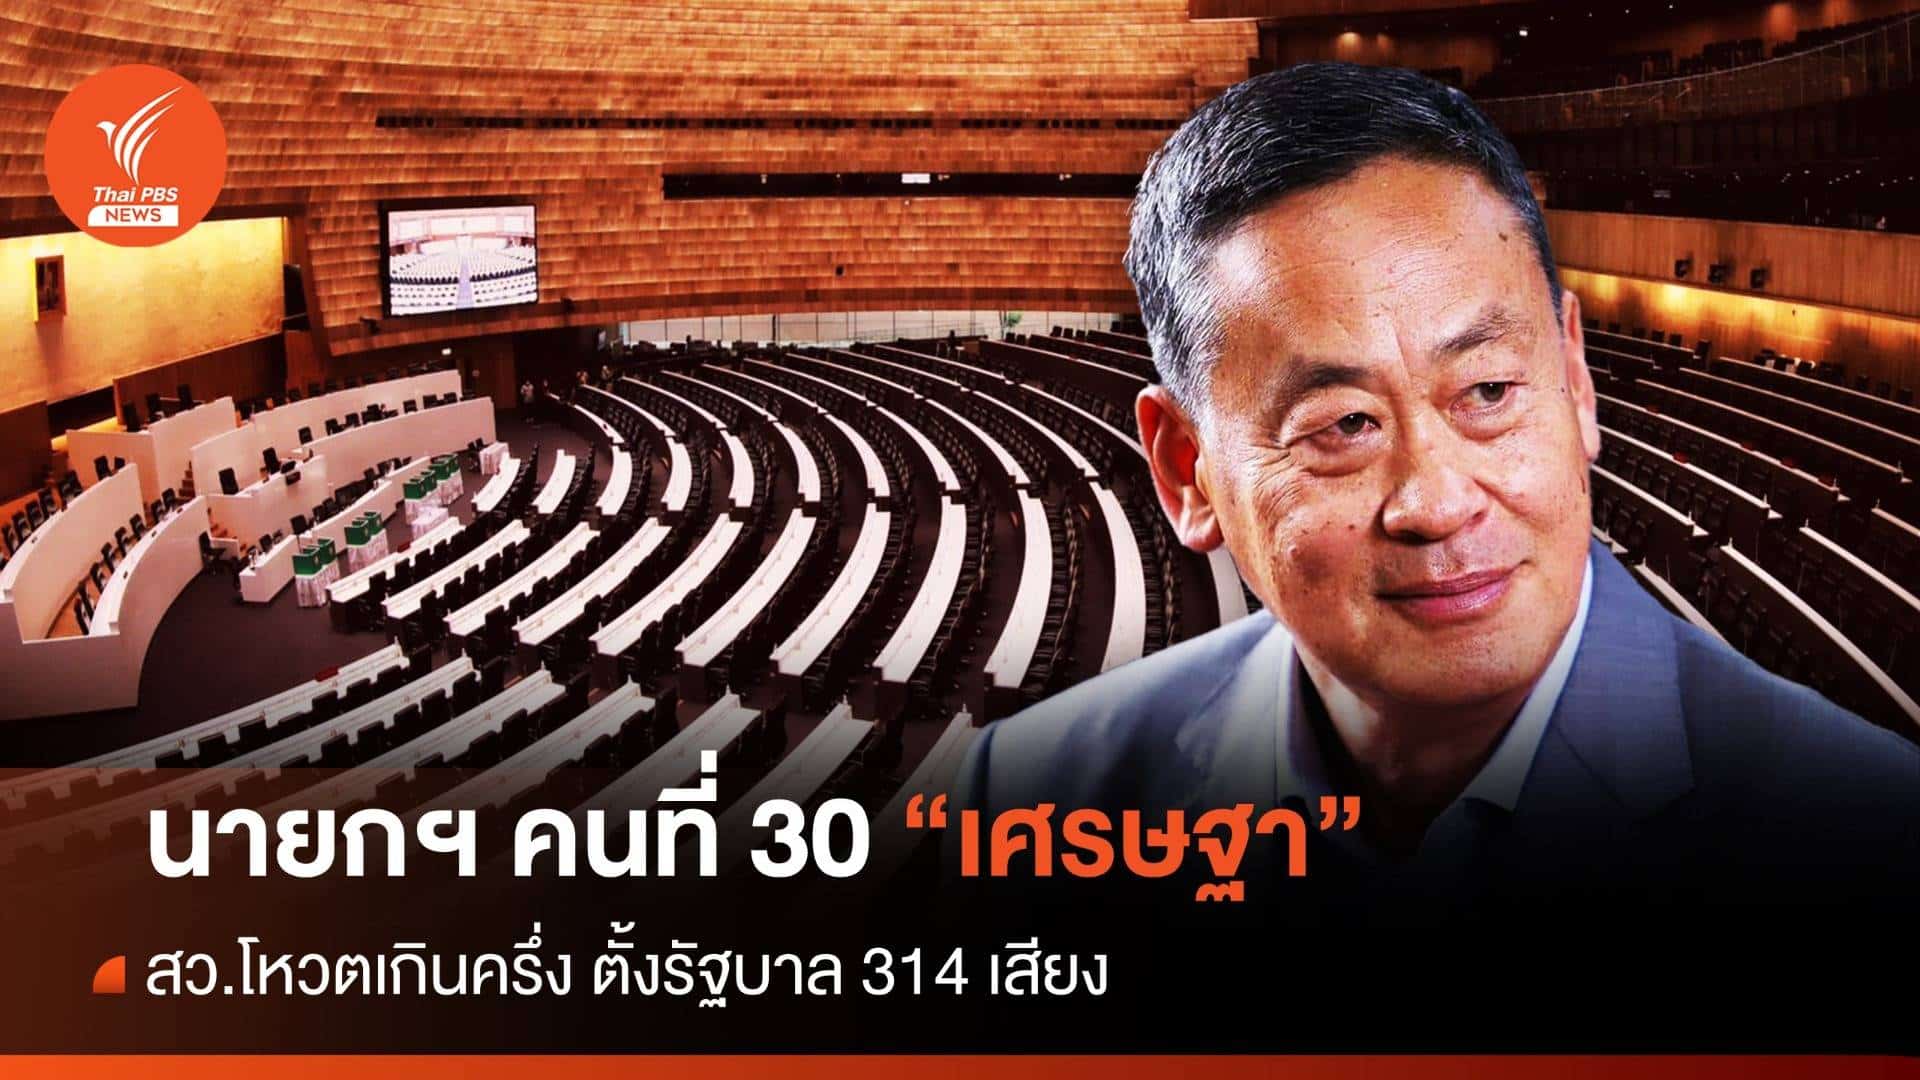 เศรษฐา ทวีสิน นายกคนที่ 30 ของไทย นายกรัฐมนตรี